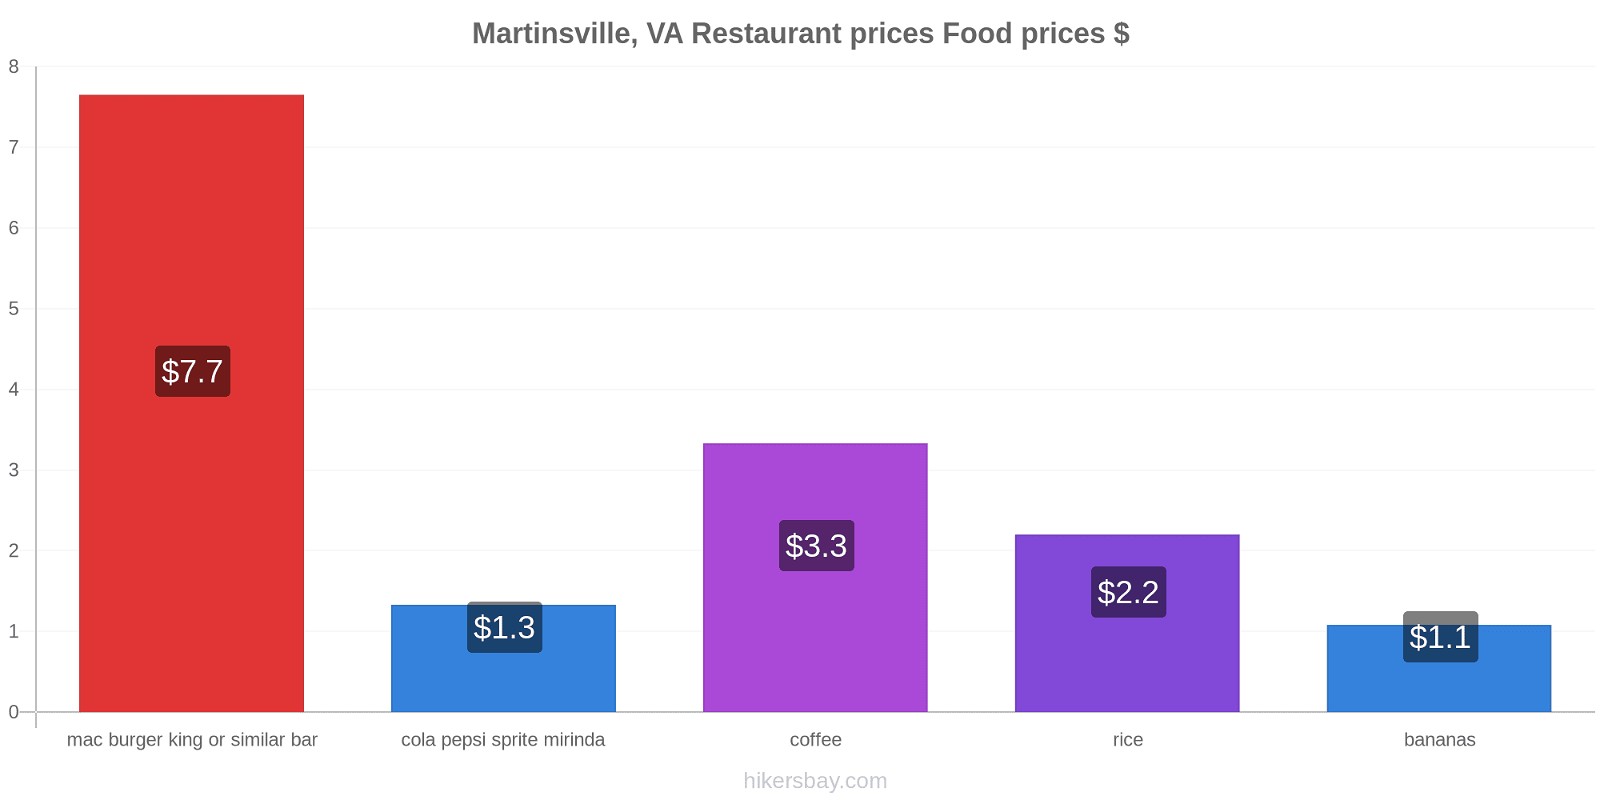 Martinsville, VA price changes hikersbay.com